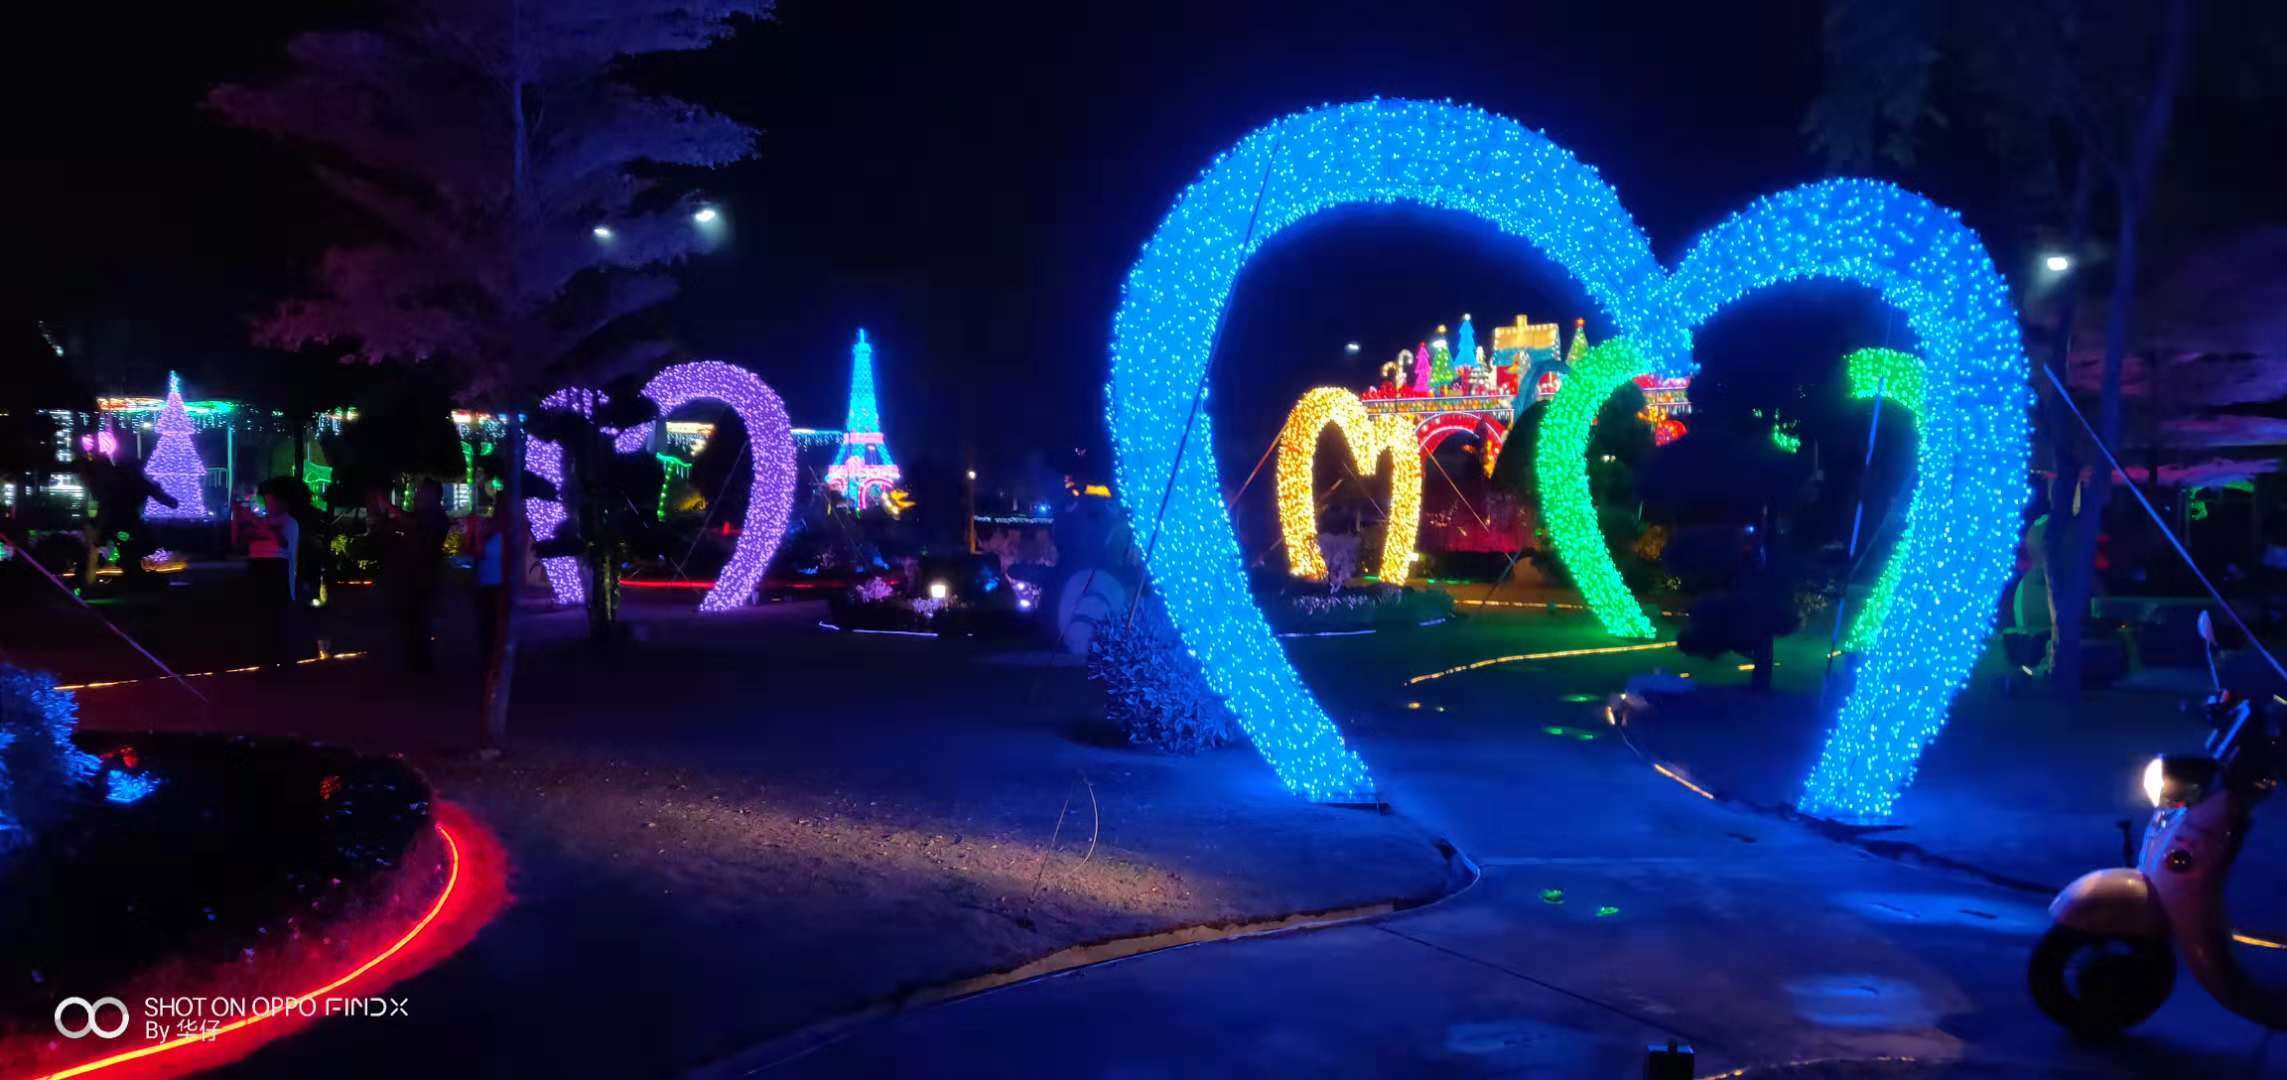 自贡华亦彩手工定制lec造型花灯发光园区园林美食灯会活动展览